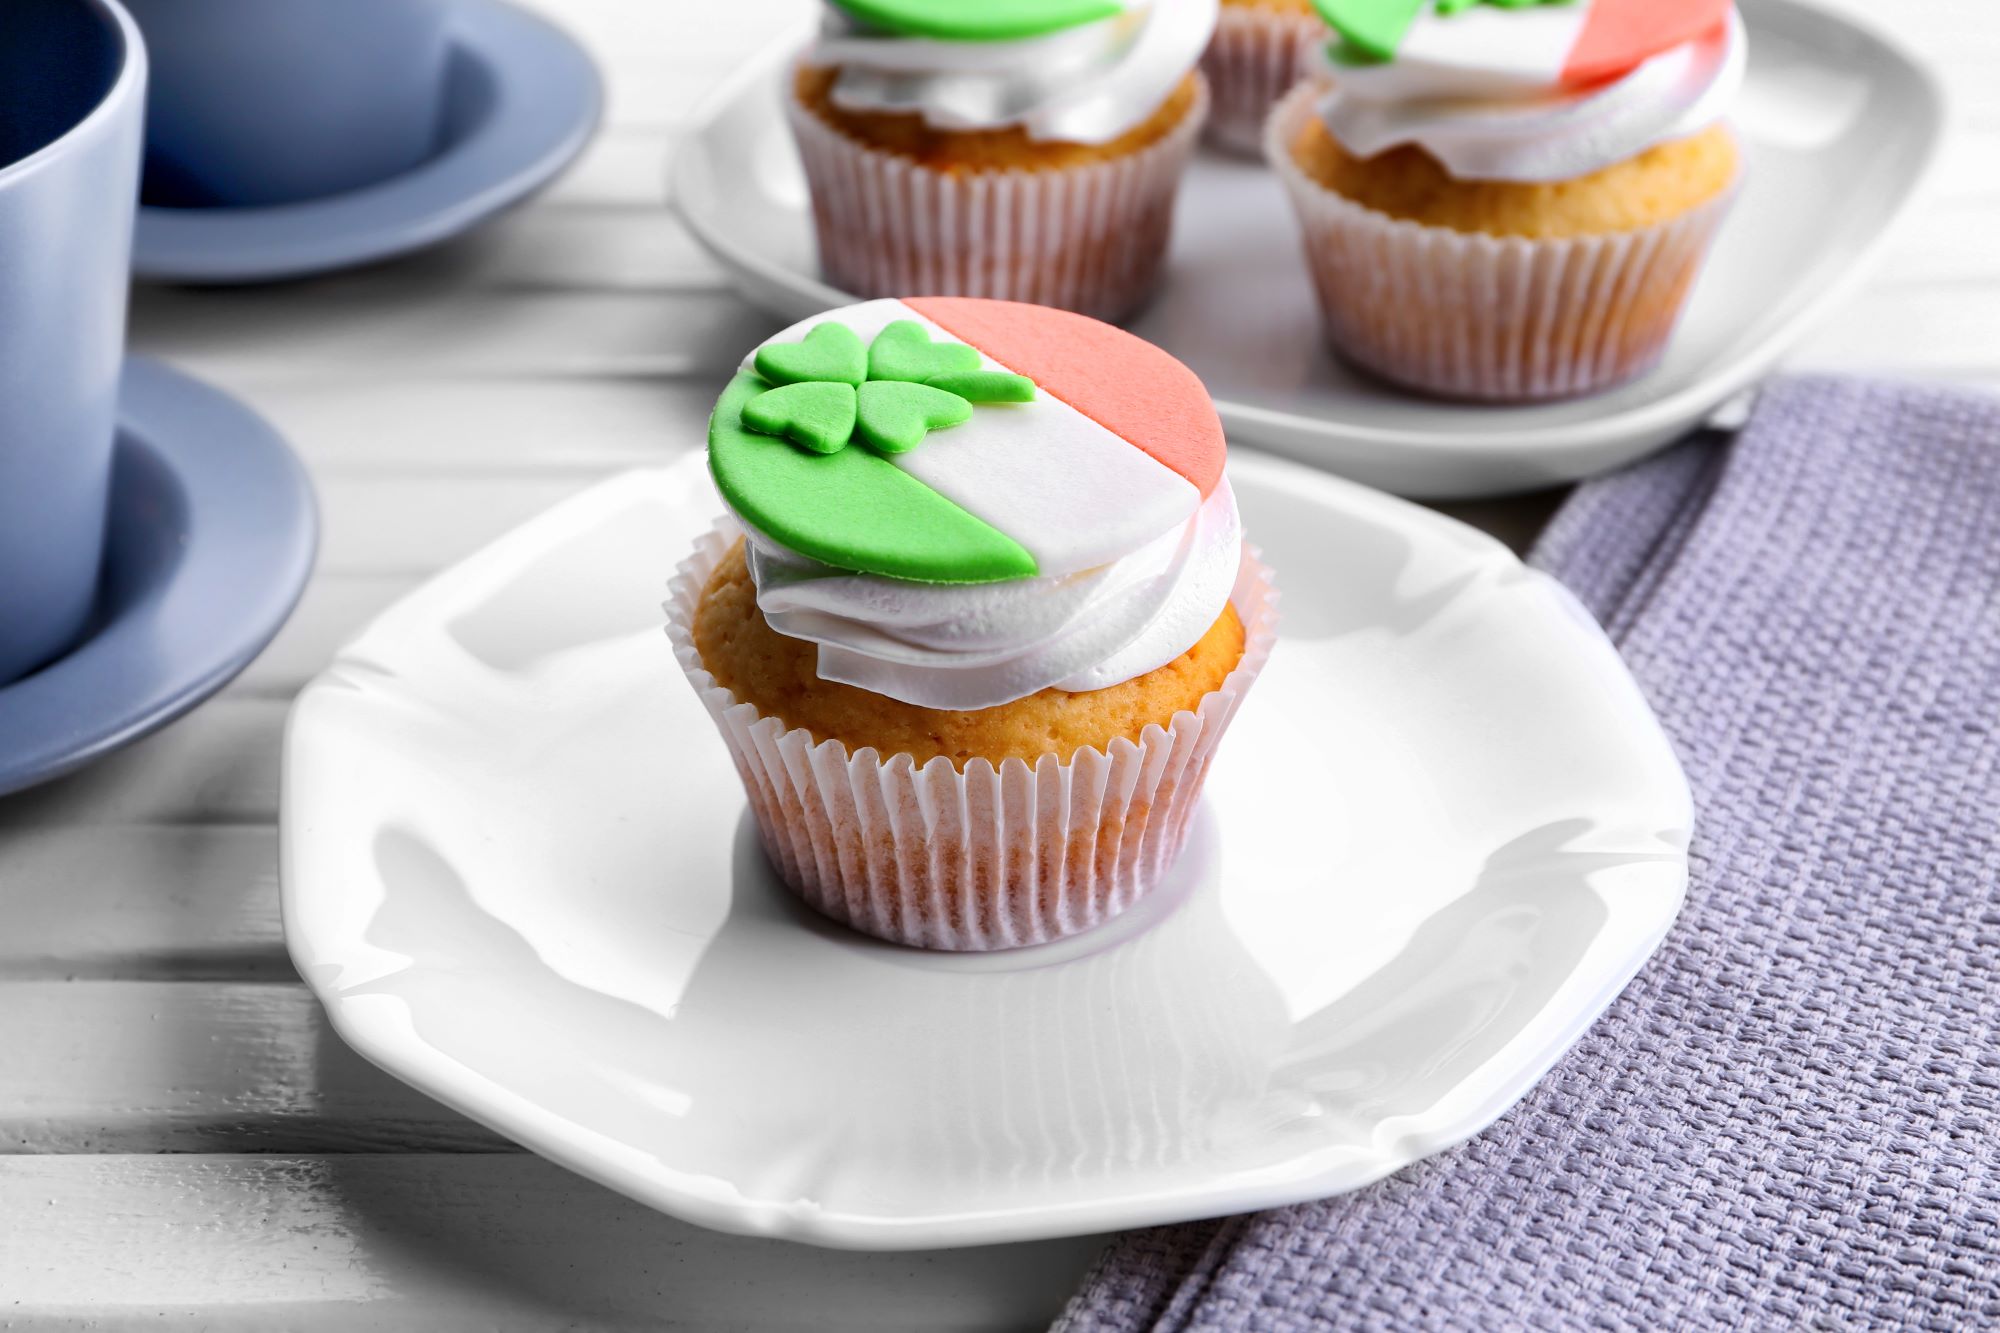 Irish Cream Cupcake for St. Patrick’s Day!